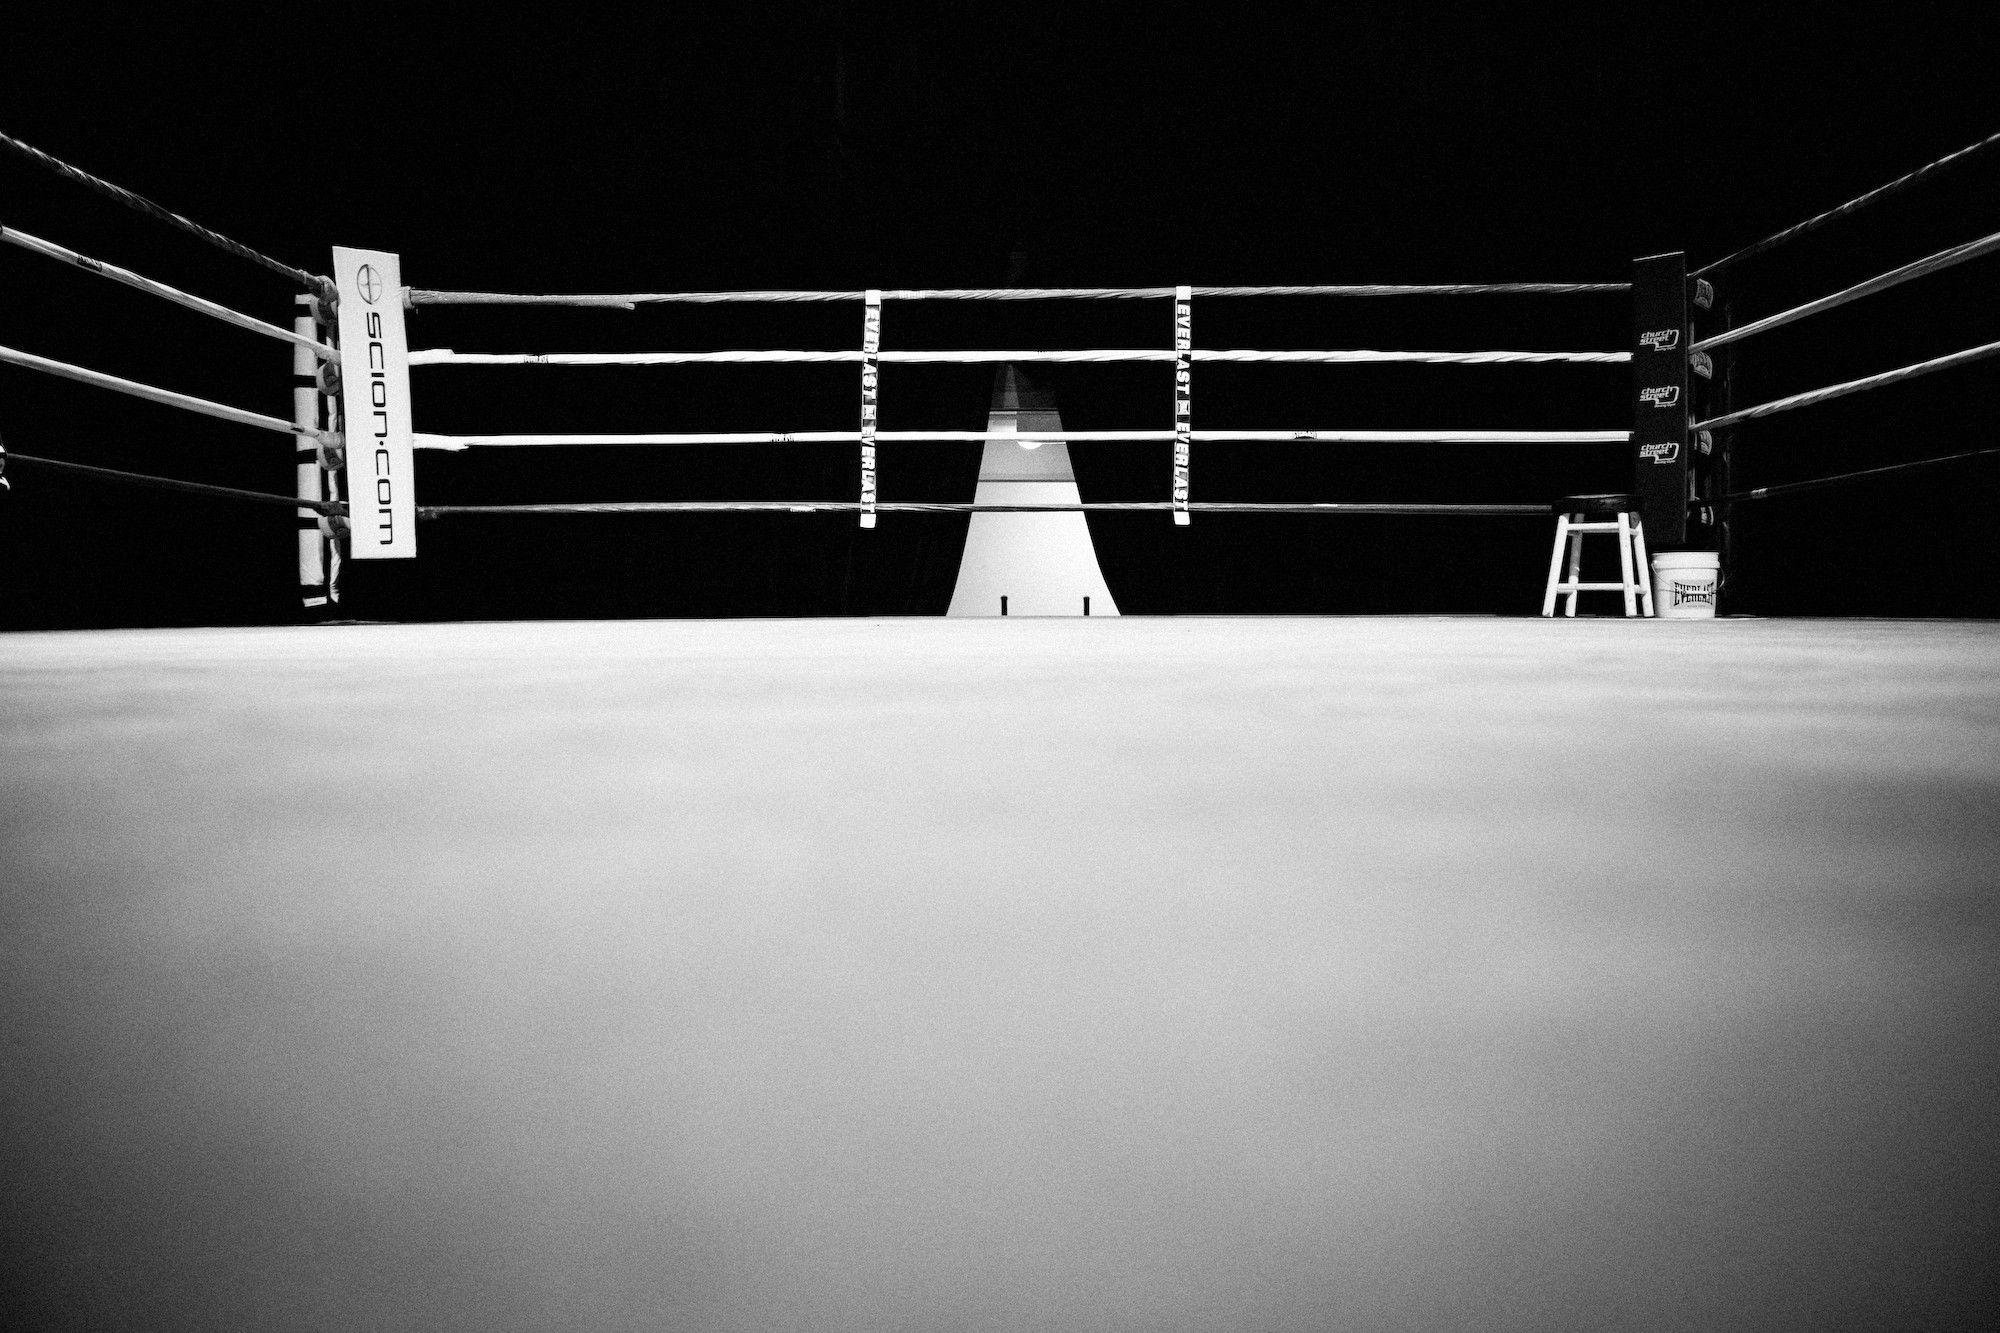 inside boxing ring